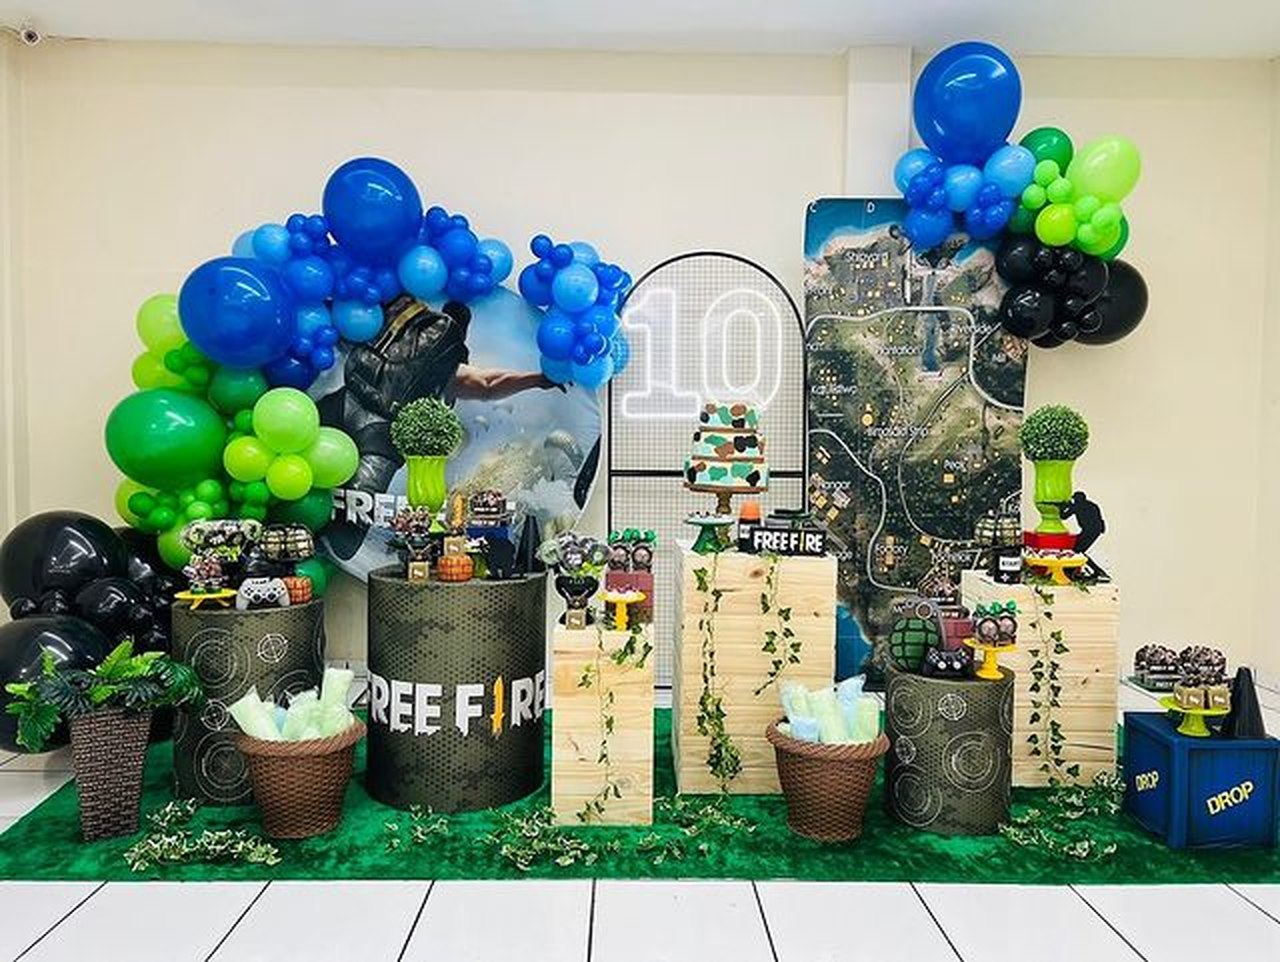 Decoração Minecraft: faça da festa de aniversário uma verdadeira